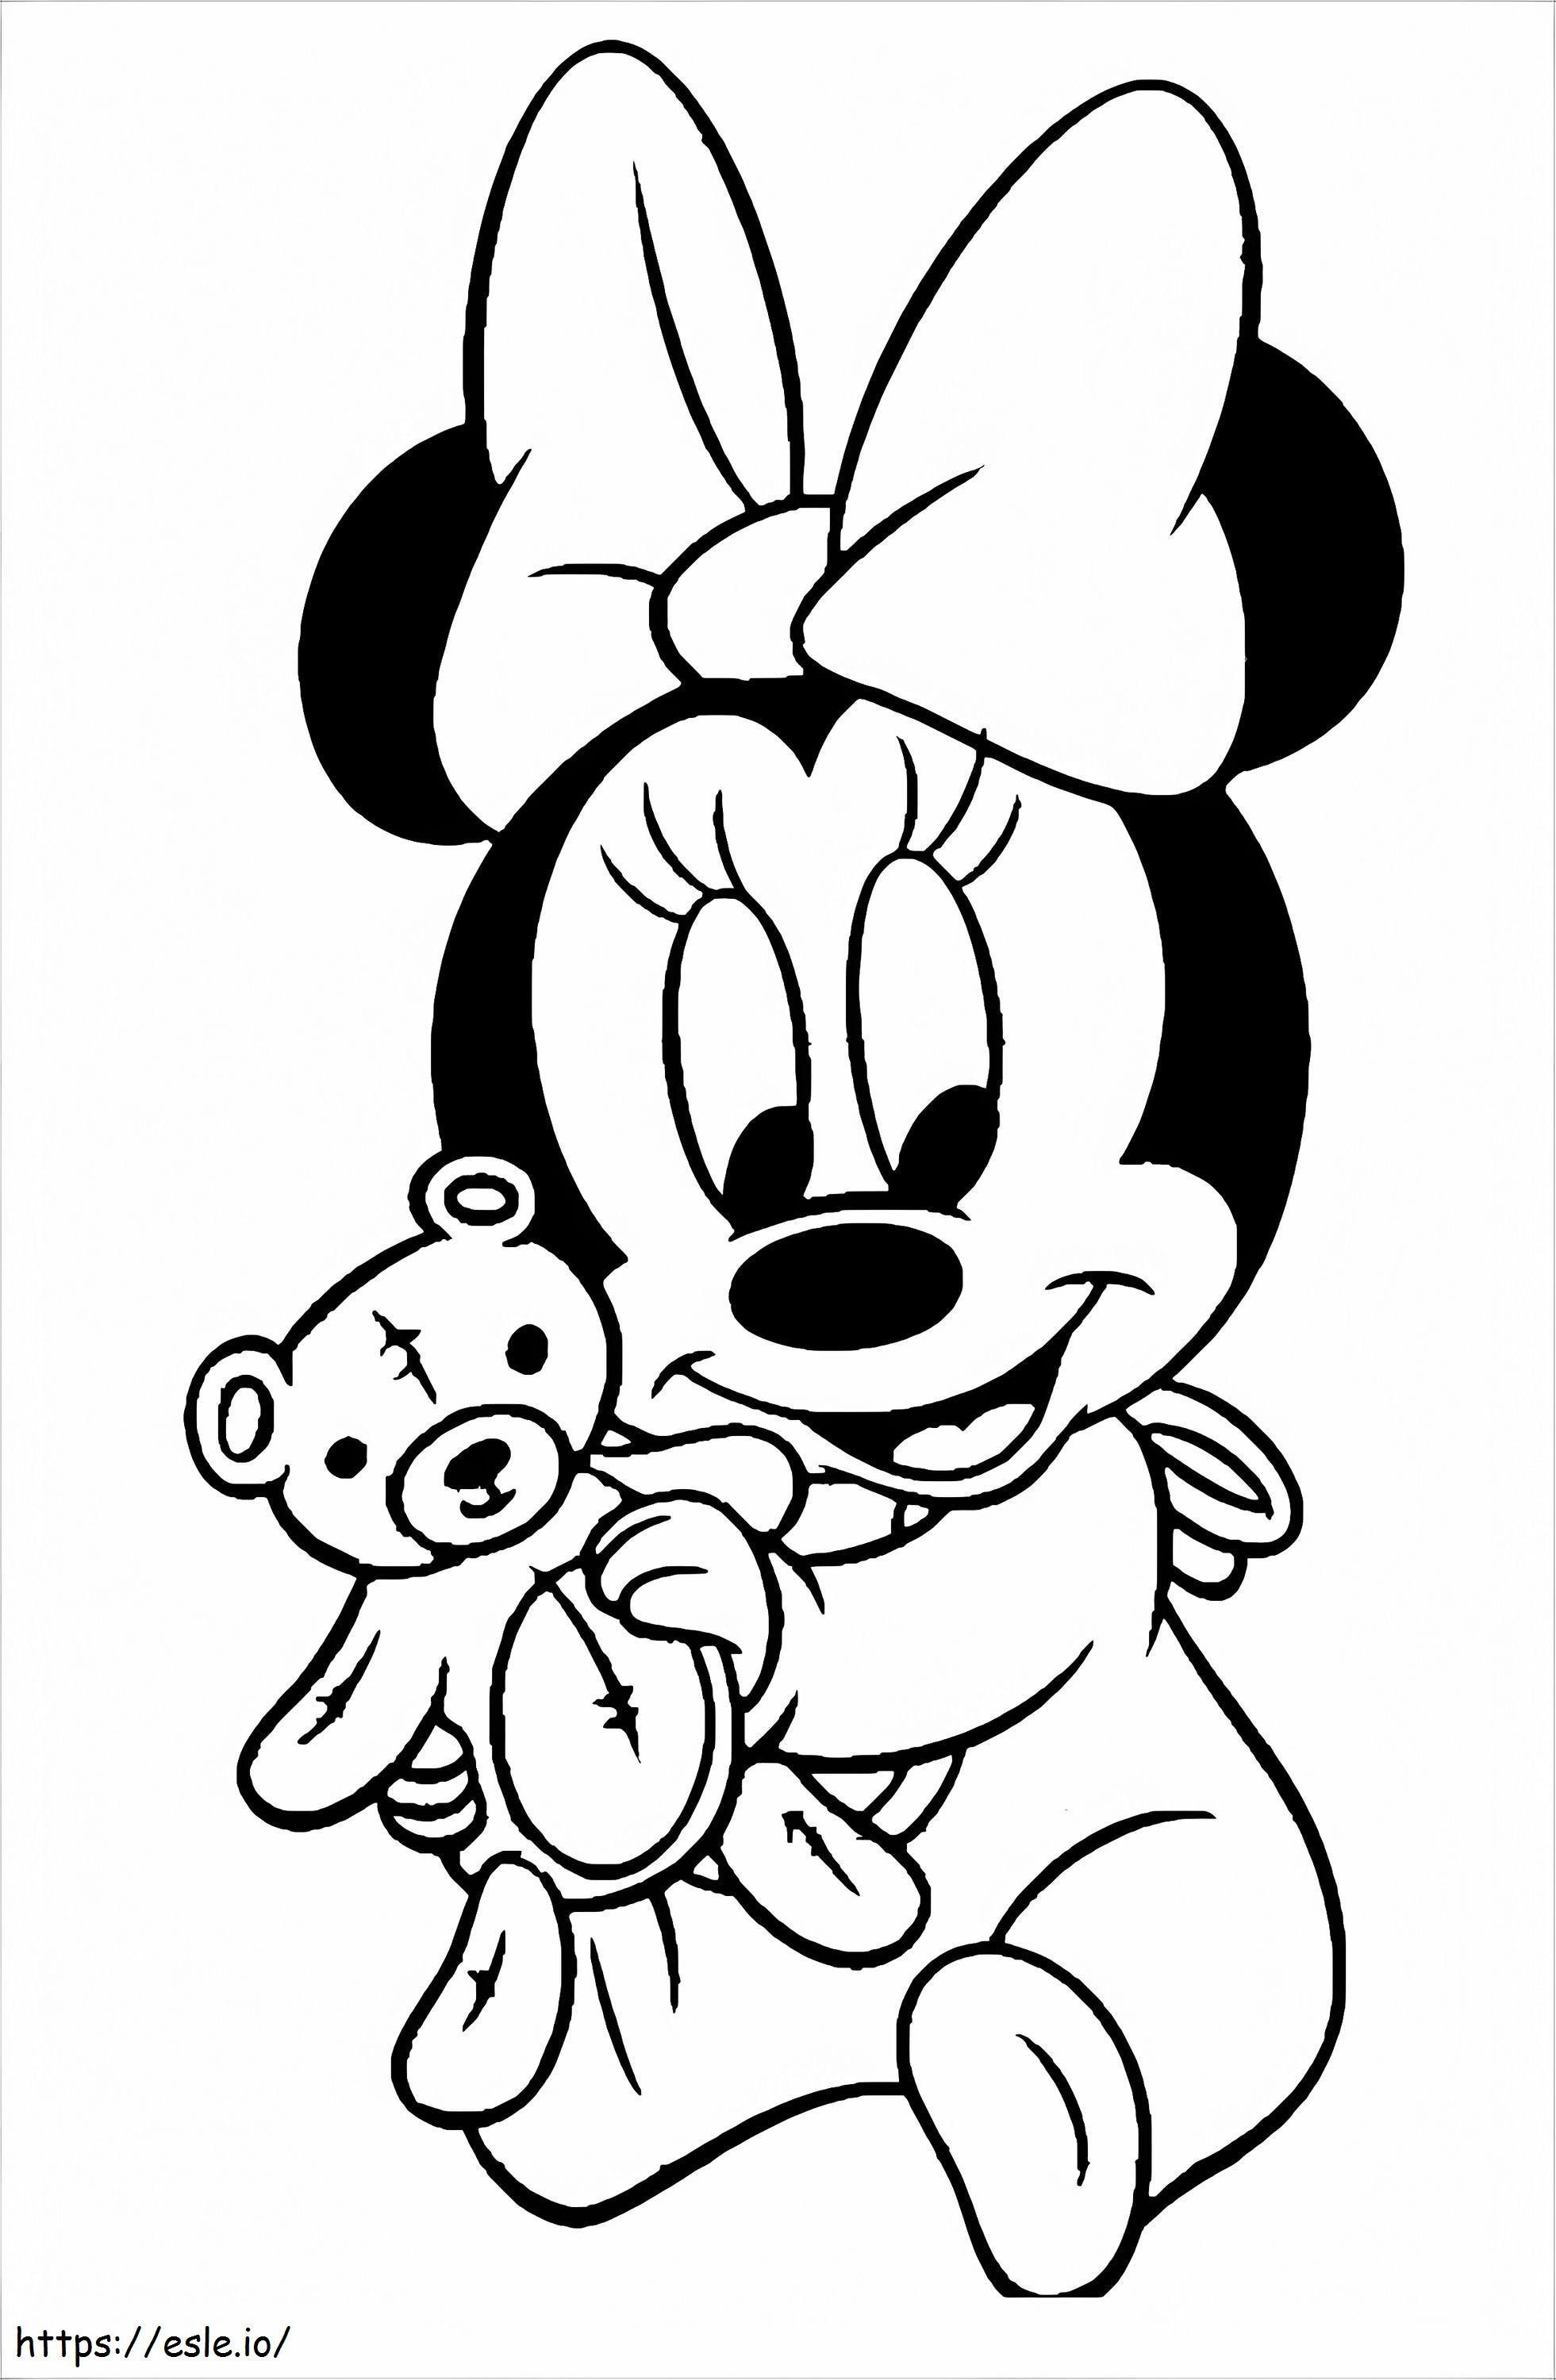 1532138954 Minnie Mouse con orsacchiotto A4 da colorare